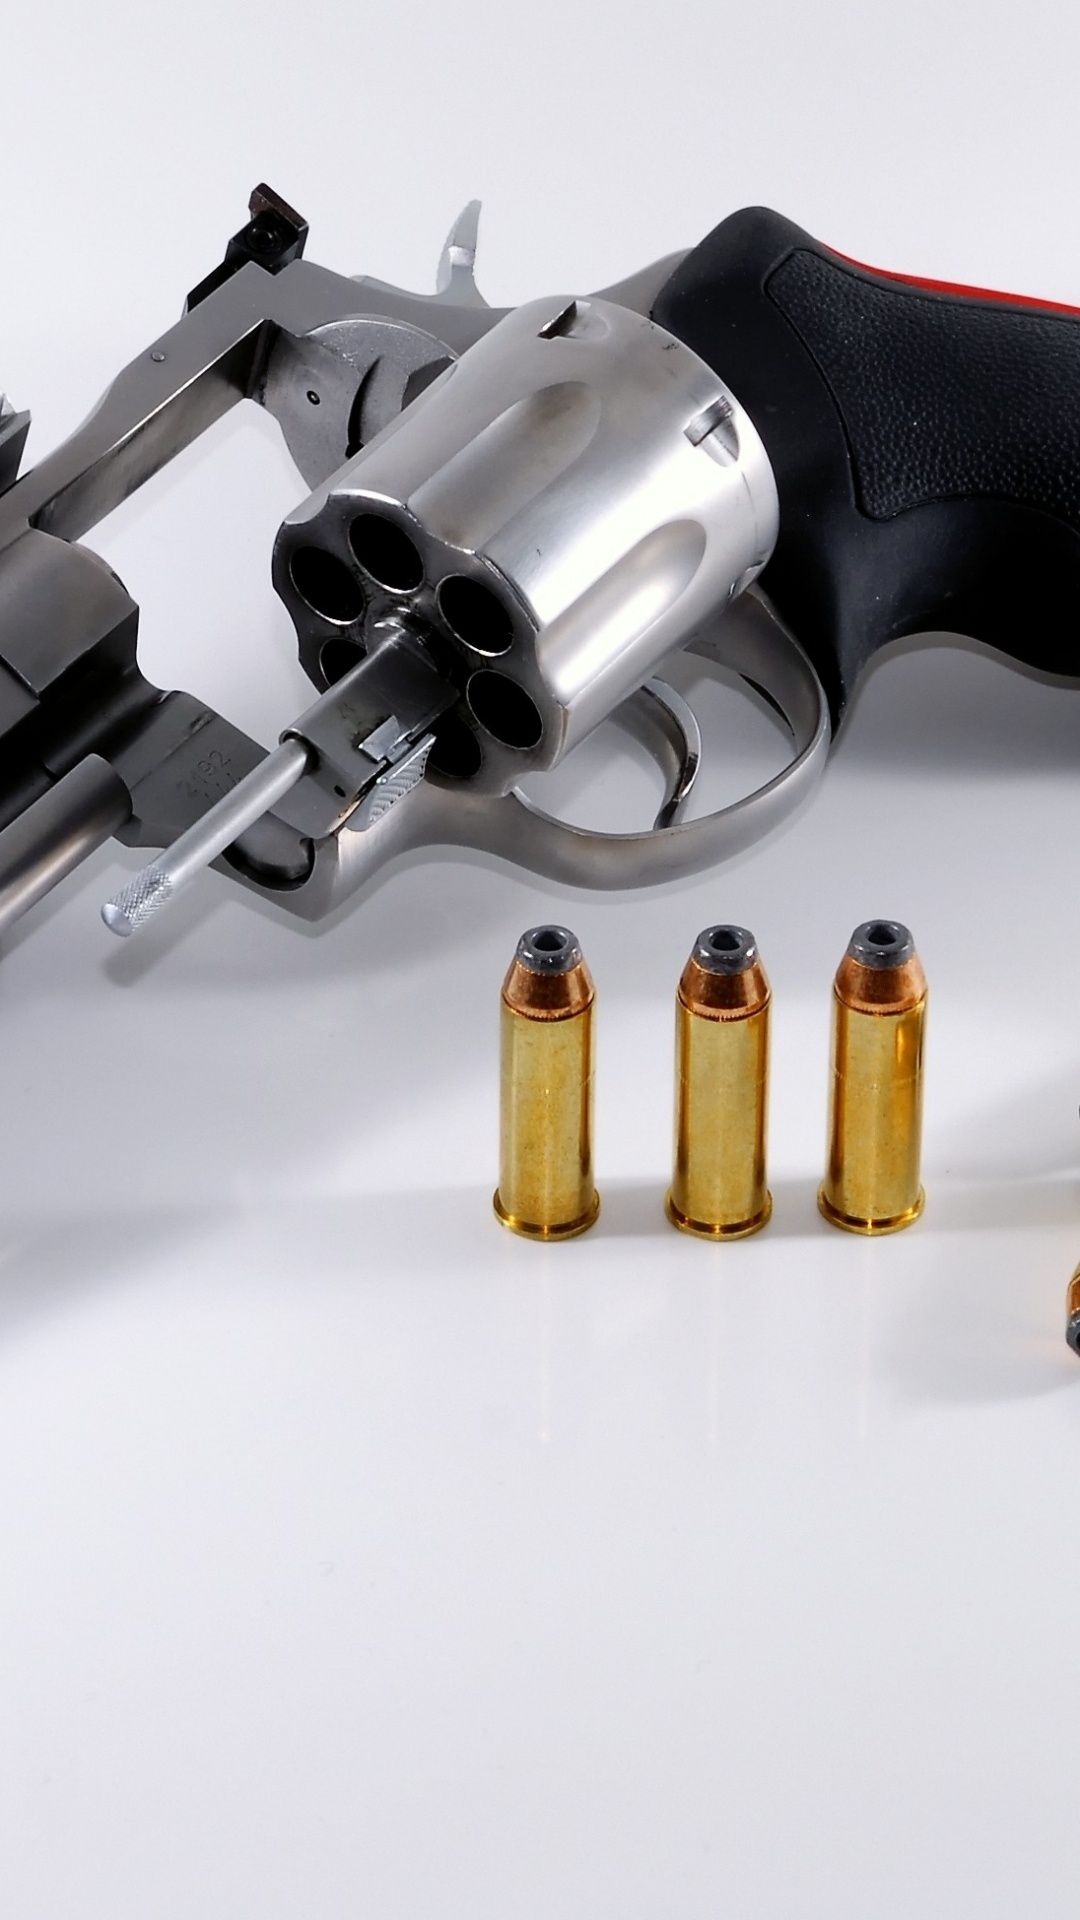 Revolver, Munition, Trigger, Handfeuerwaffe, Waffe. Wallpaper in 1080x1920 Resolution